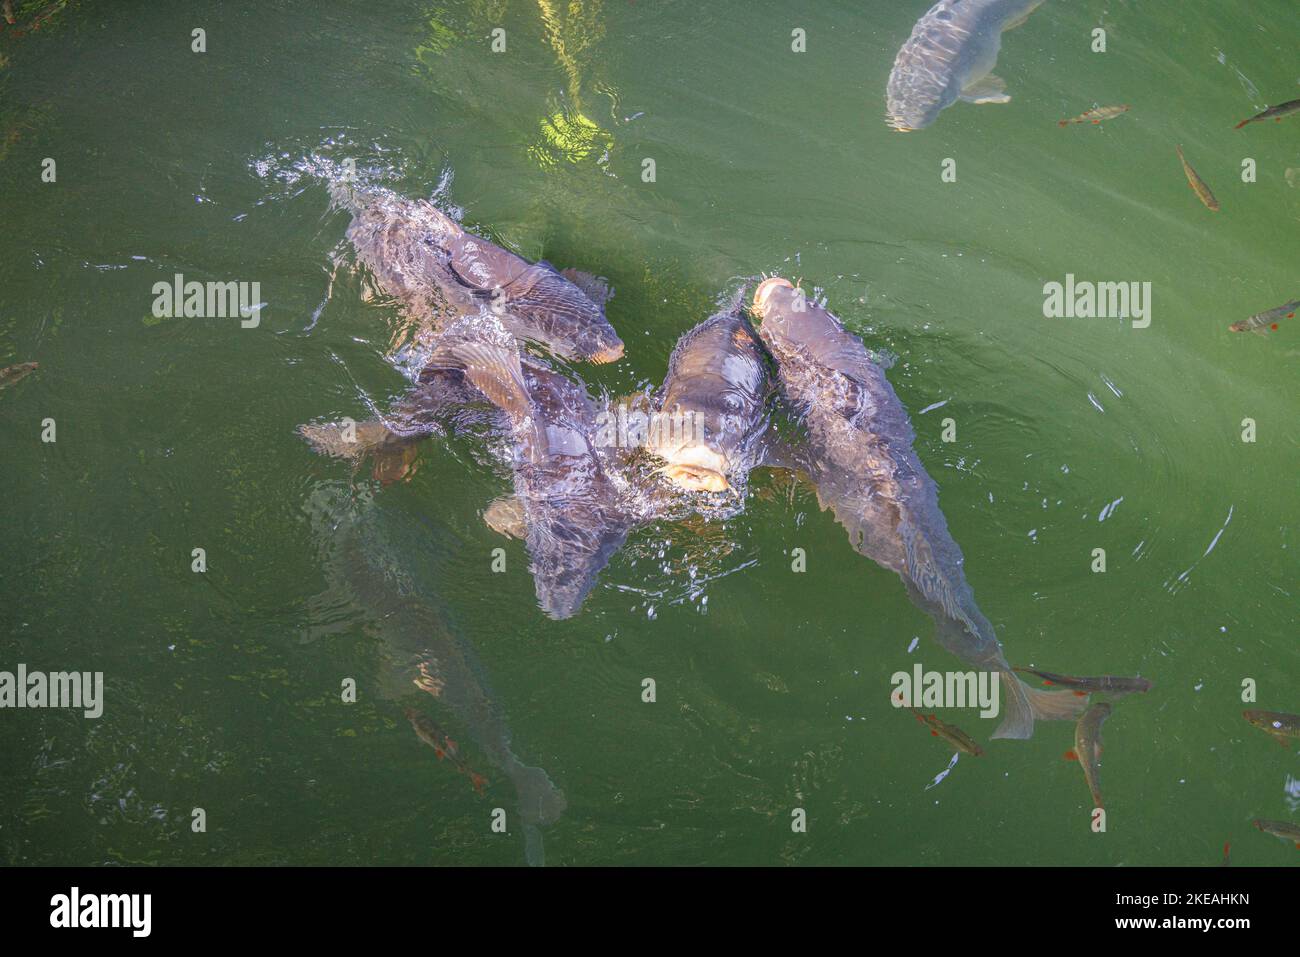 Carpa, carpa común, carpa europea (Cyprinus carpio), grandes carpas espejo en un pequeño estanque de páramo son alimentados por bañistas, Alemania, Baviera, Kesselsee, Foto de stock